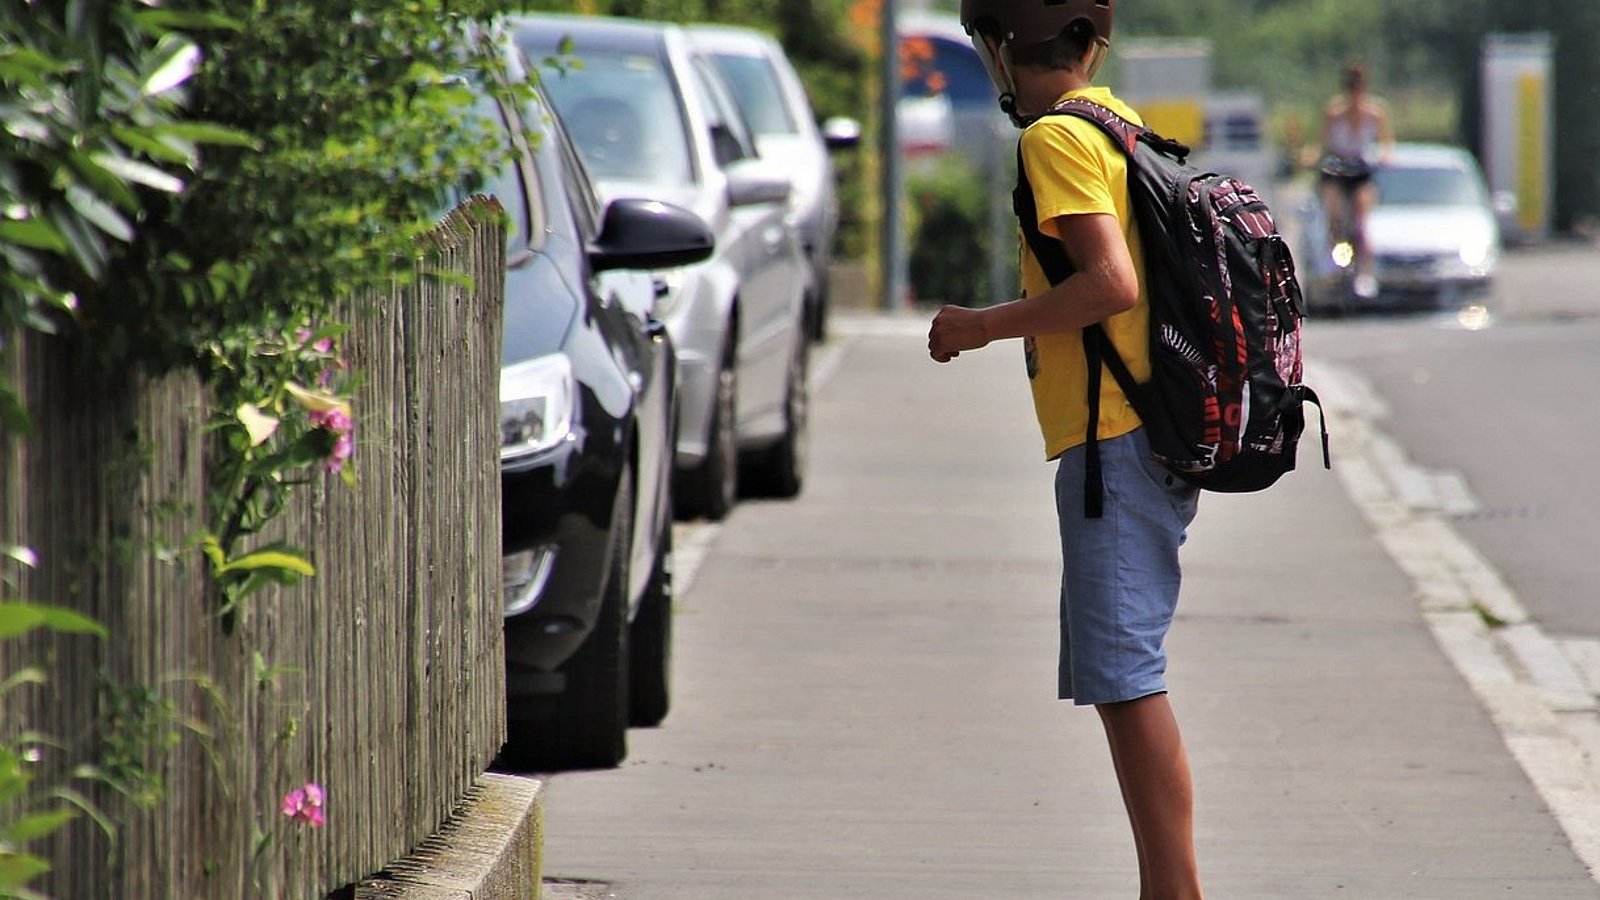 Ein Junge fährt auf einem Skateboard über den Bürgersteig. Er trägt kurze Hosen und Helm.